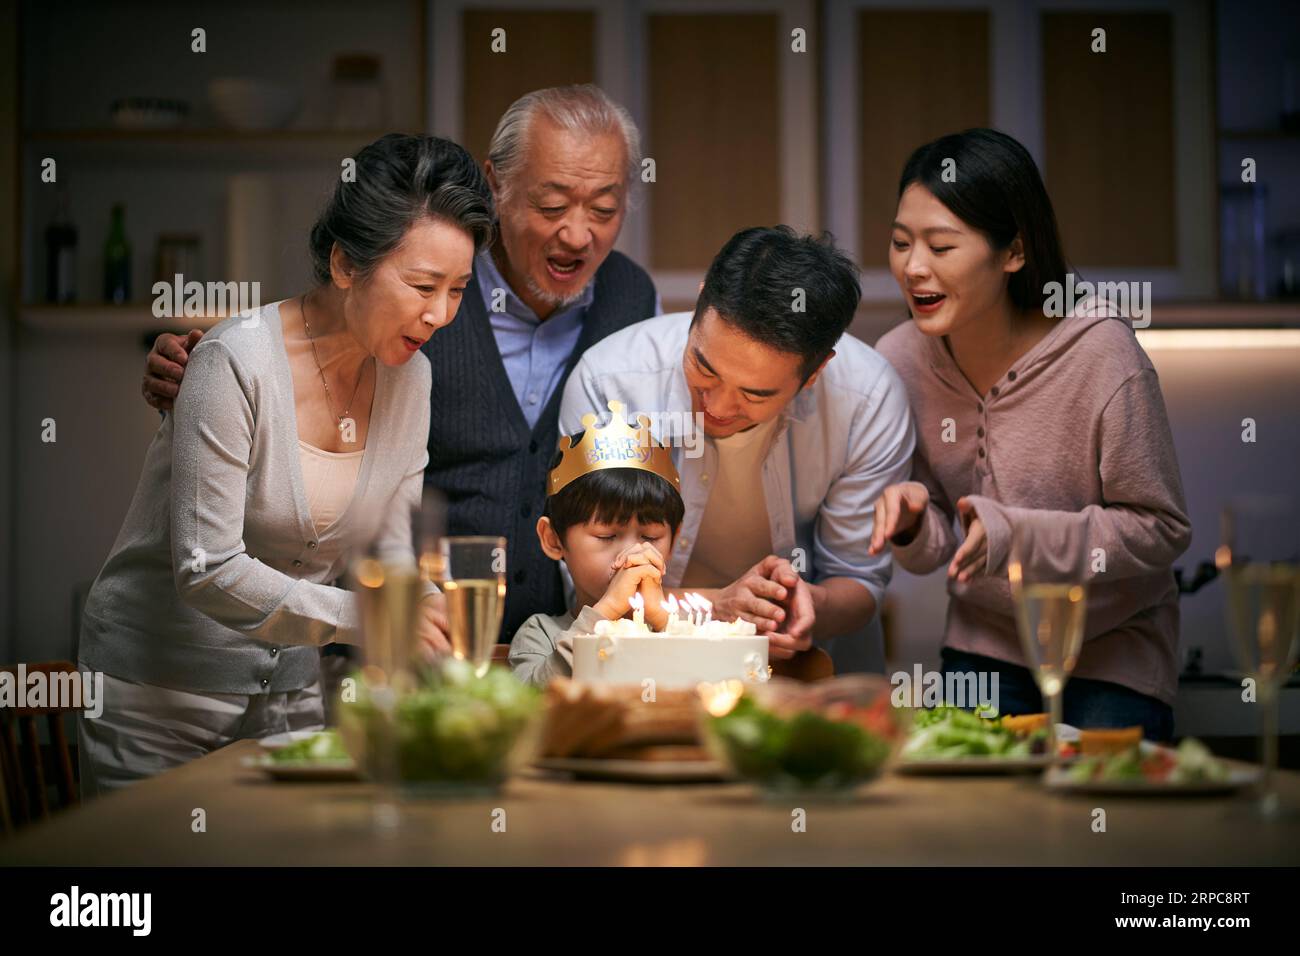 petit garçon asiatique faisant un vœu alors que la famille de trois générations fête son anniversaire à la maison Banque D'Images